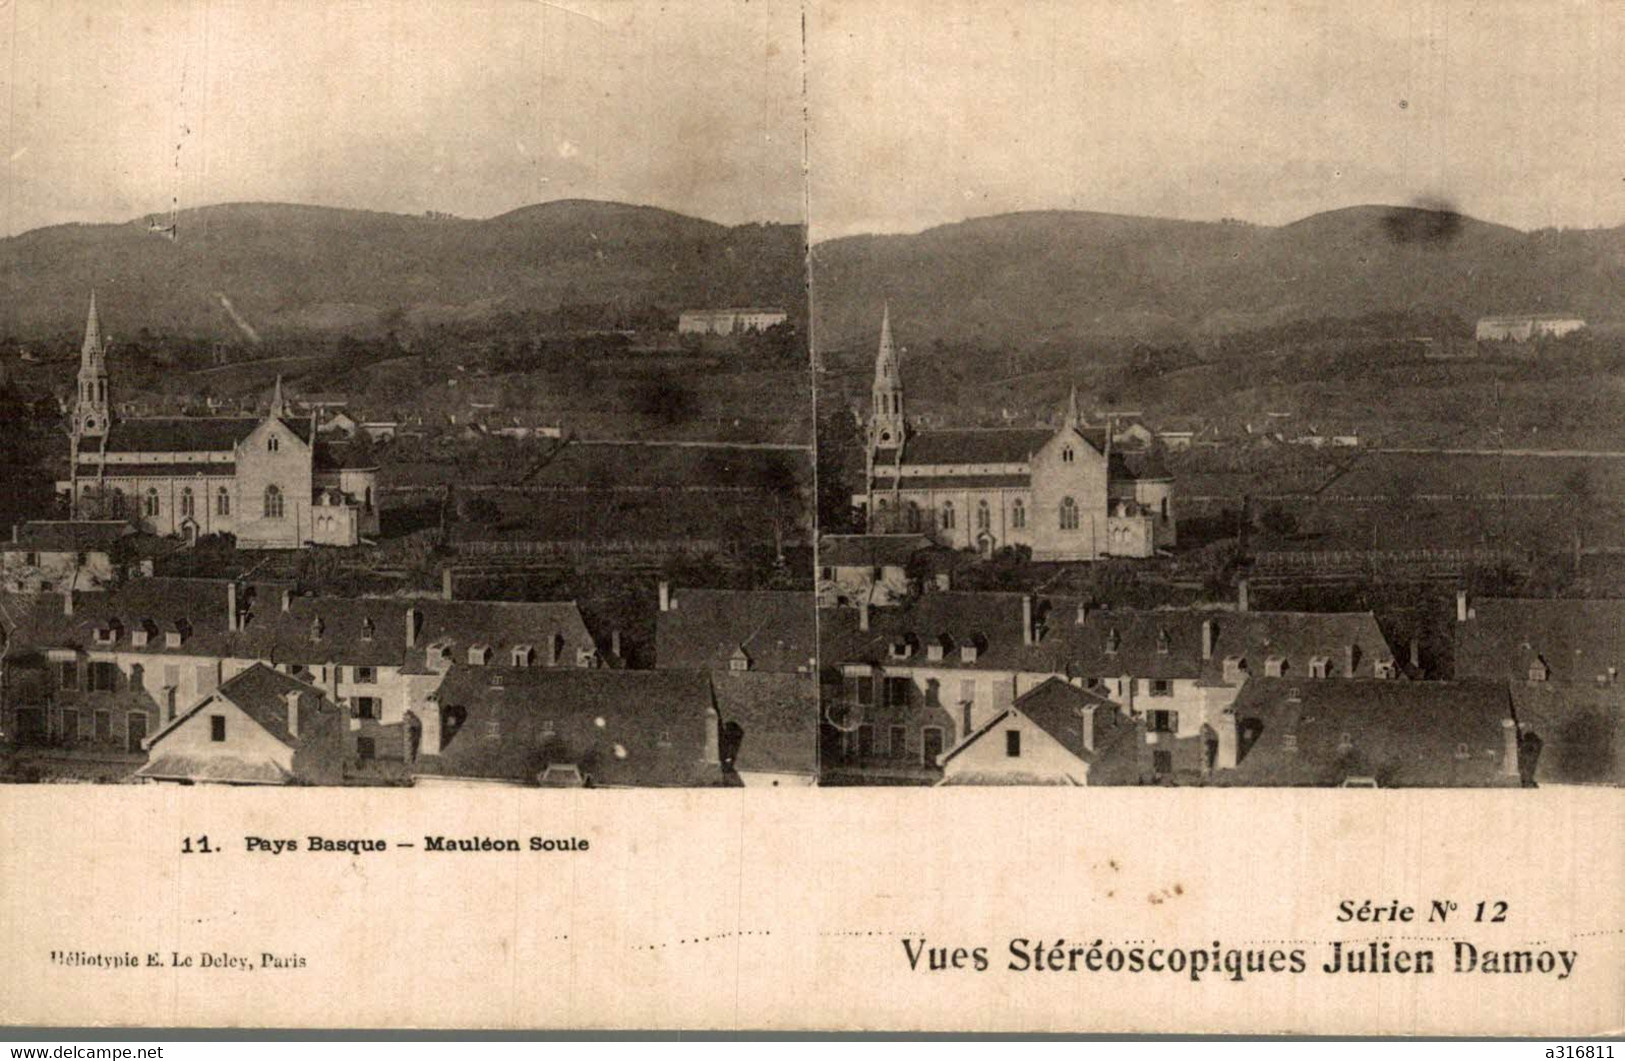 Pays Basque Mauleon Soule - Cartes Stéréoscopiques